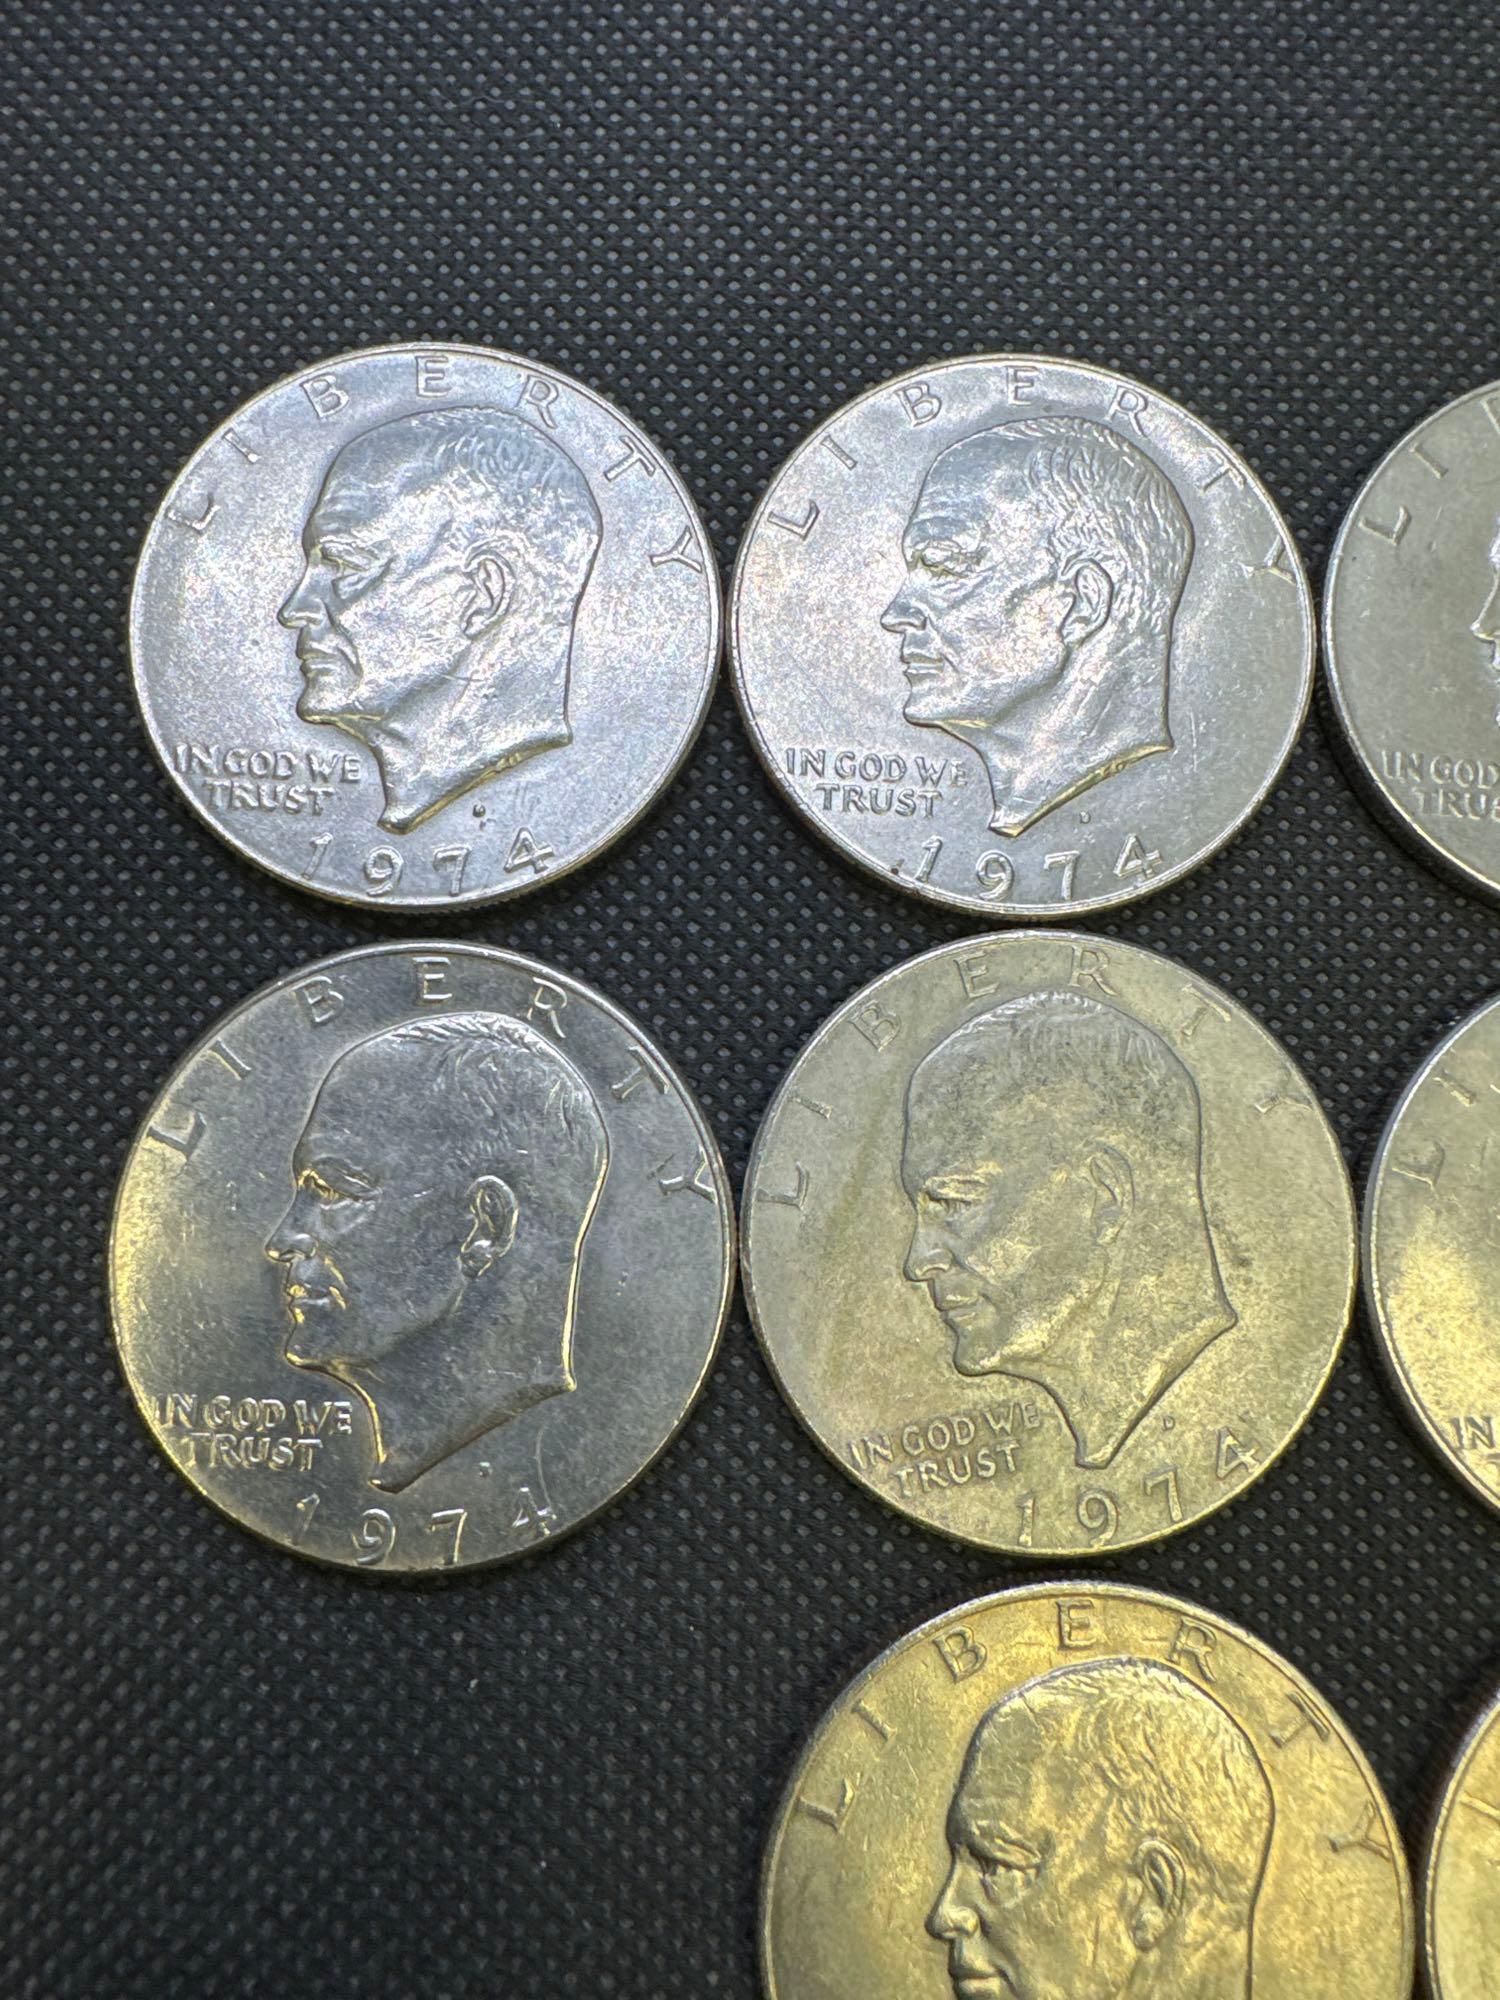 10 1974 Eisenhower Dollars 226.0 Grams